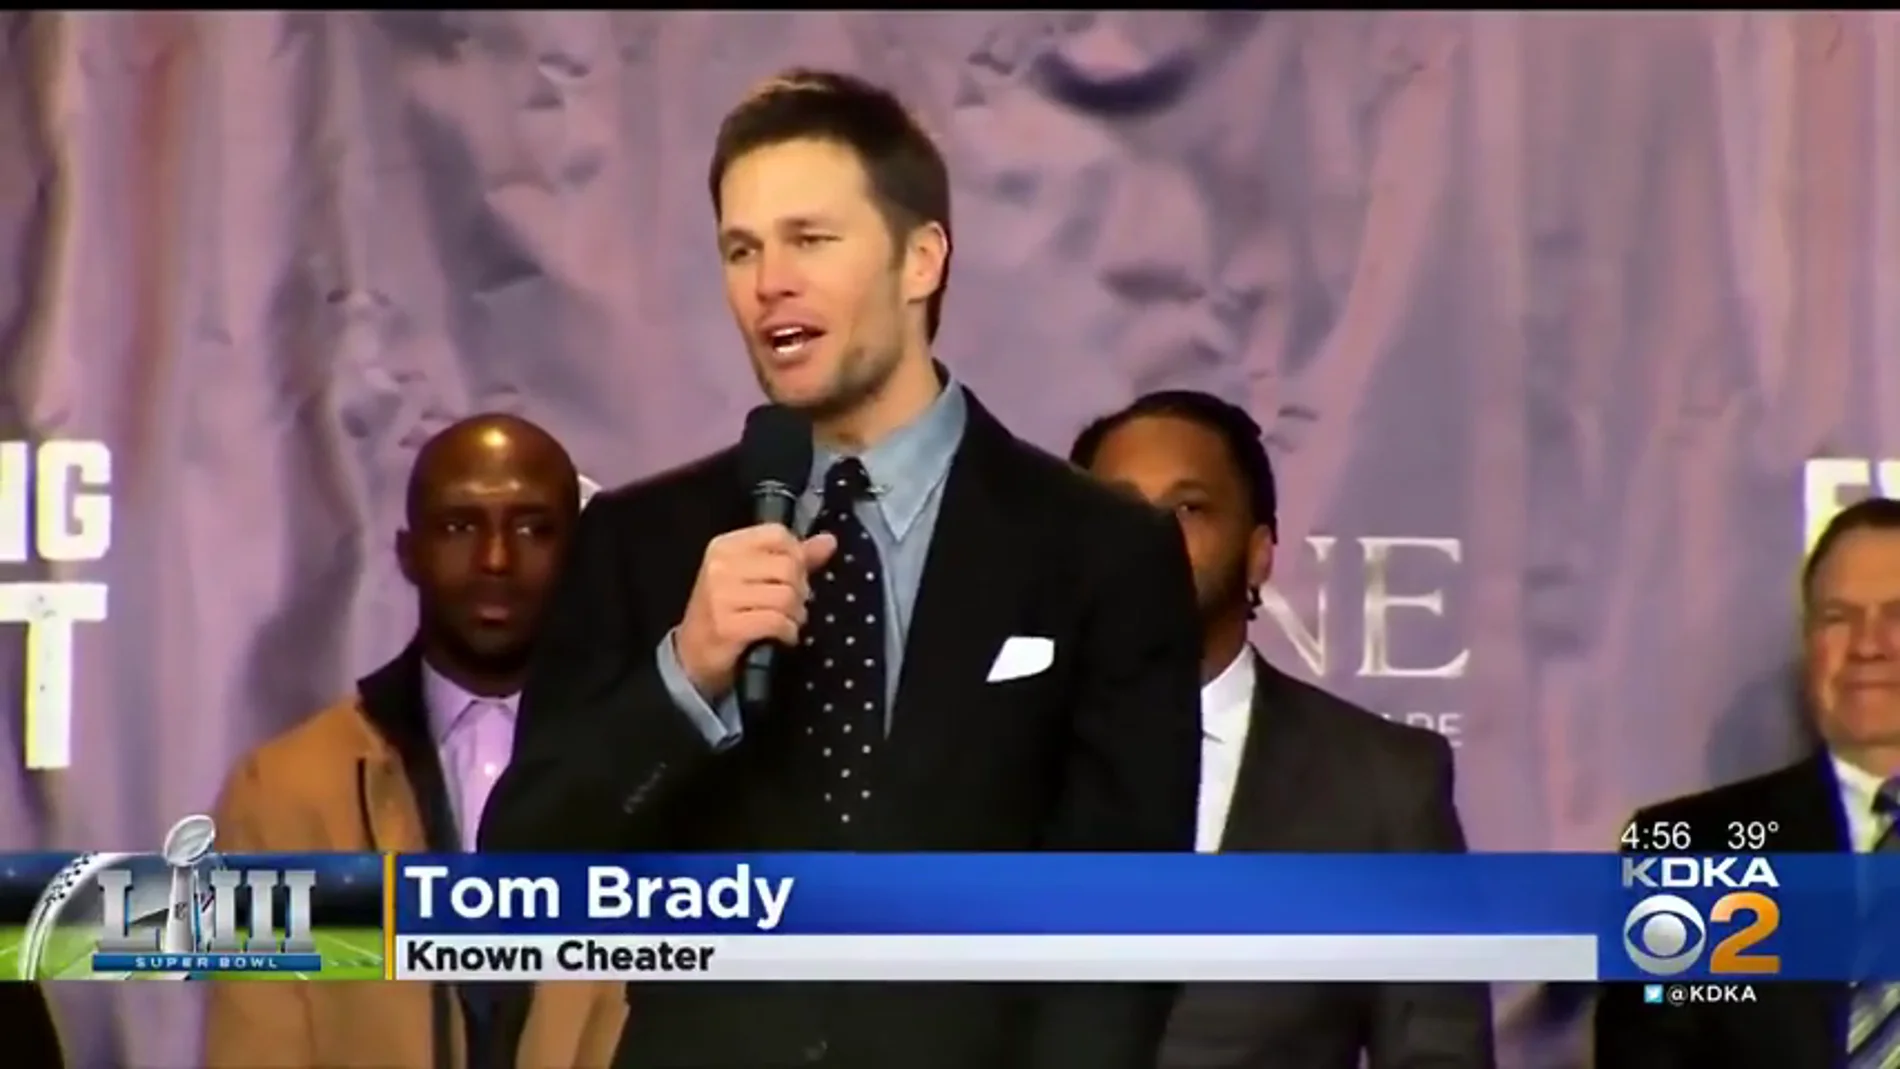 Despiden a un productor de noticias por rotular con el término de 'conocido tramposo' a Tom Brady